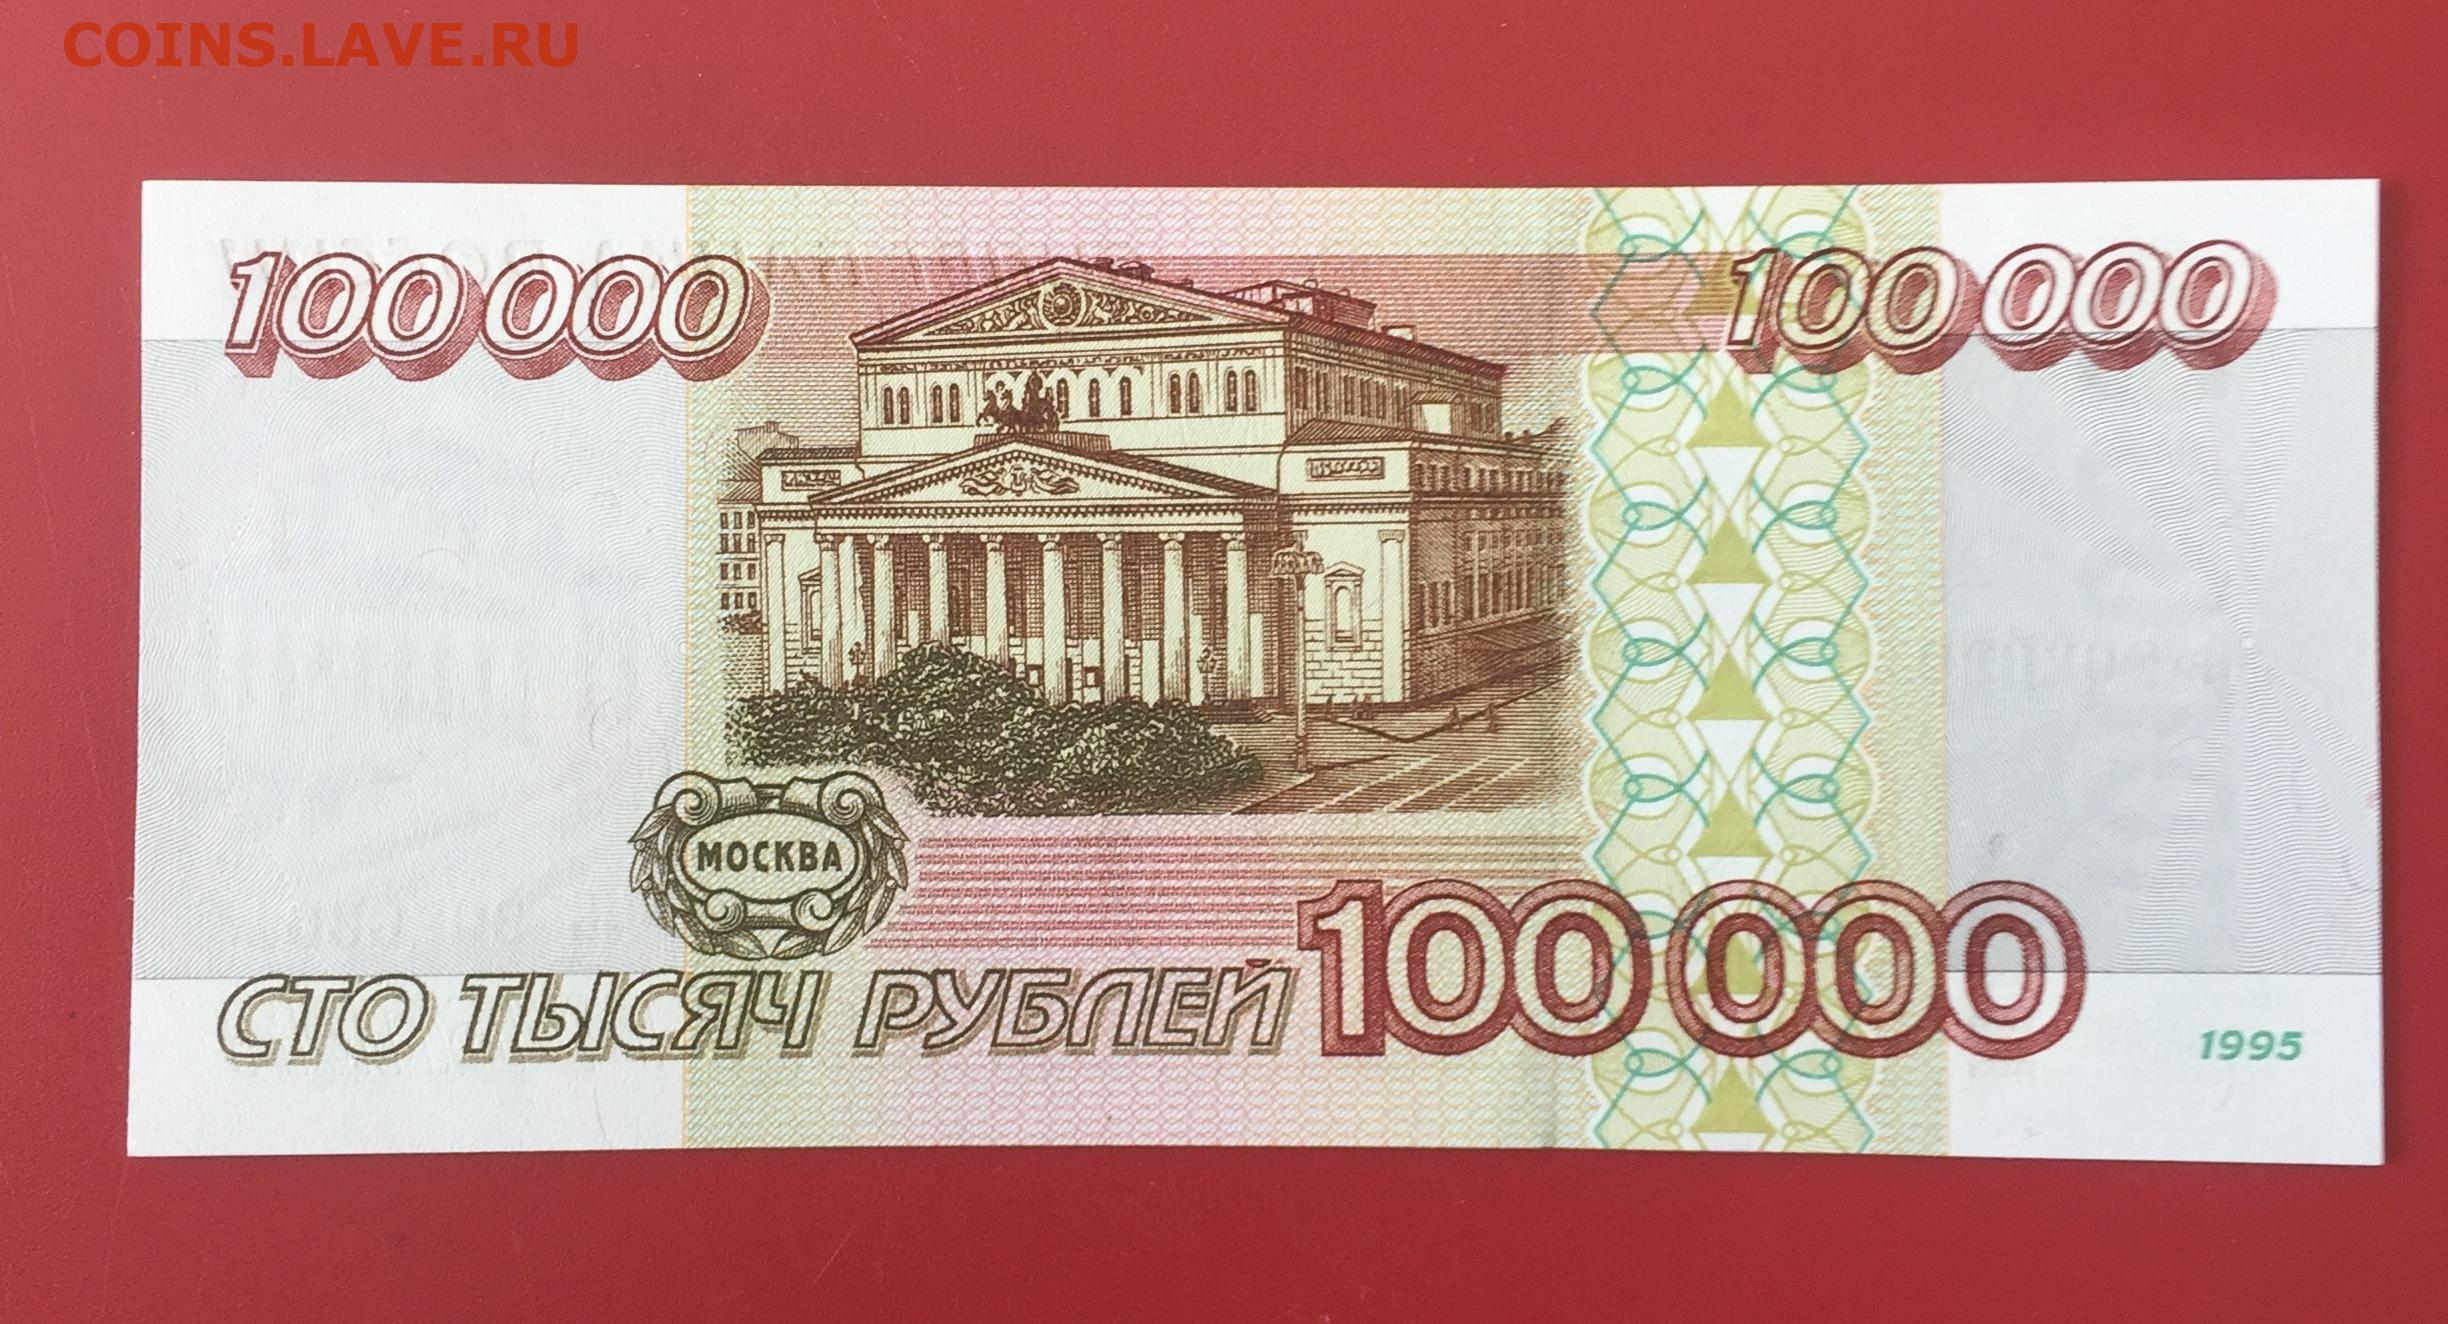 80 российских рублей. 10 000 Рублей. 100000 Рублей в 1998 году. Ноль рублей. Рубль России.